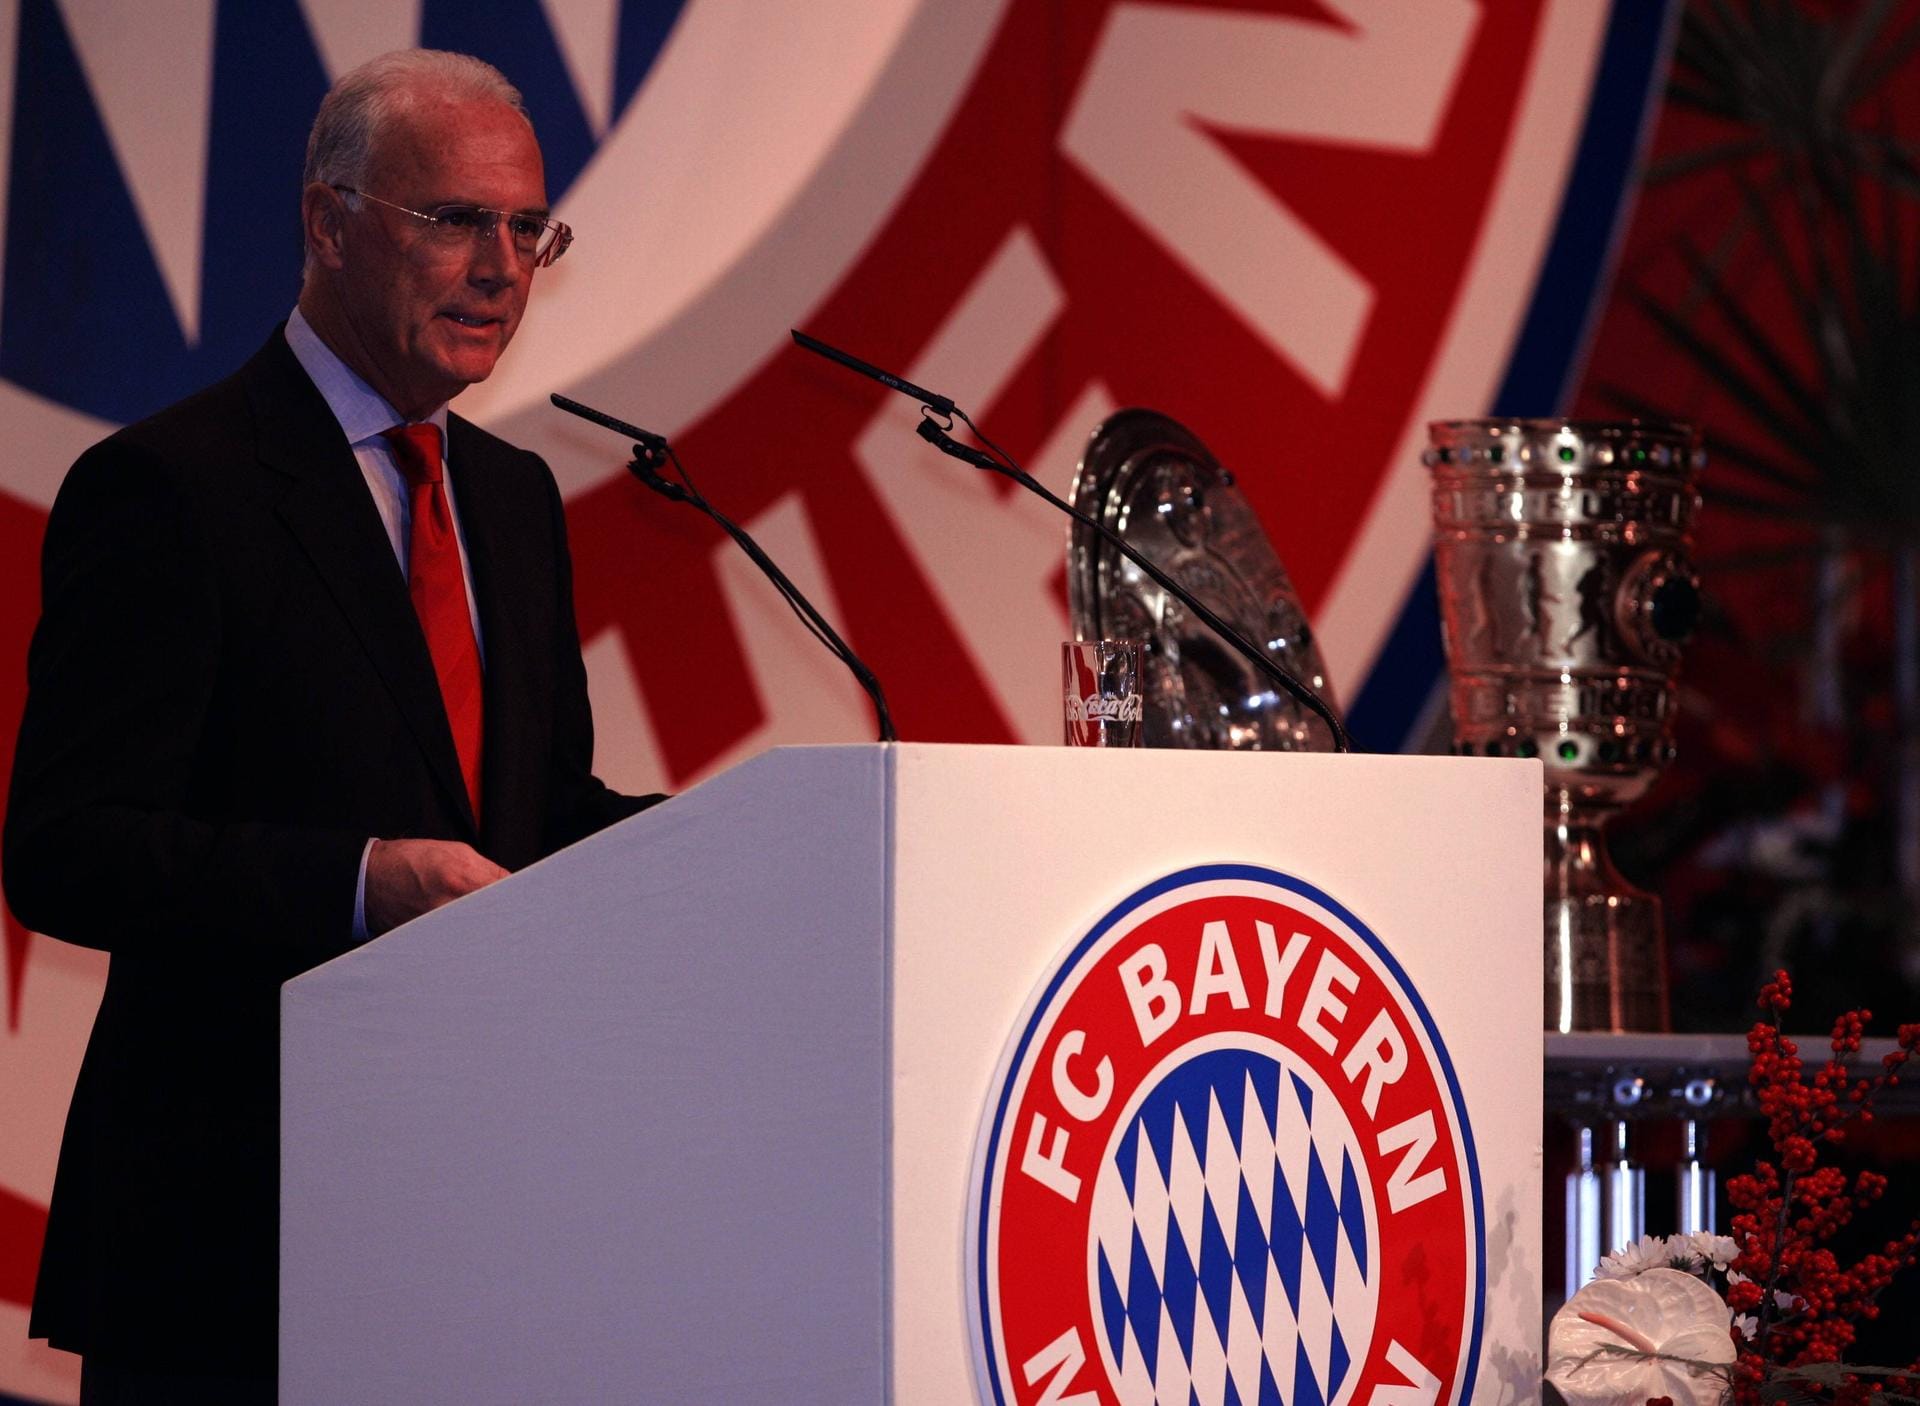 Nach seiner Zeit in Frankreich wird Beckenbauer 1991 zunächst Vize-Präsident, ab 1994 Präsident des FC Bayern München. Obwohl bereits Vereinspräsident, hilft Beckenbauer dem FC Bayern als Trainer aus. 1996 gewinnt er als Übungsleiter den Uefa Cup mit dem FC Bayern. Bis 2009 bleibt der "Kaiser" an der Vereinsspitze.